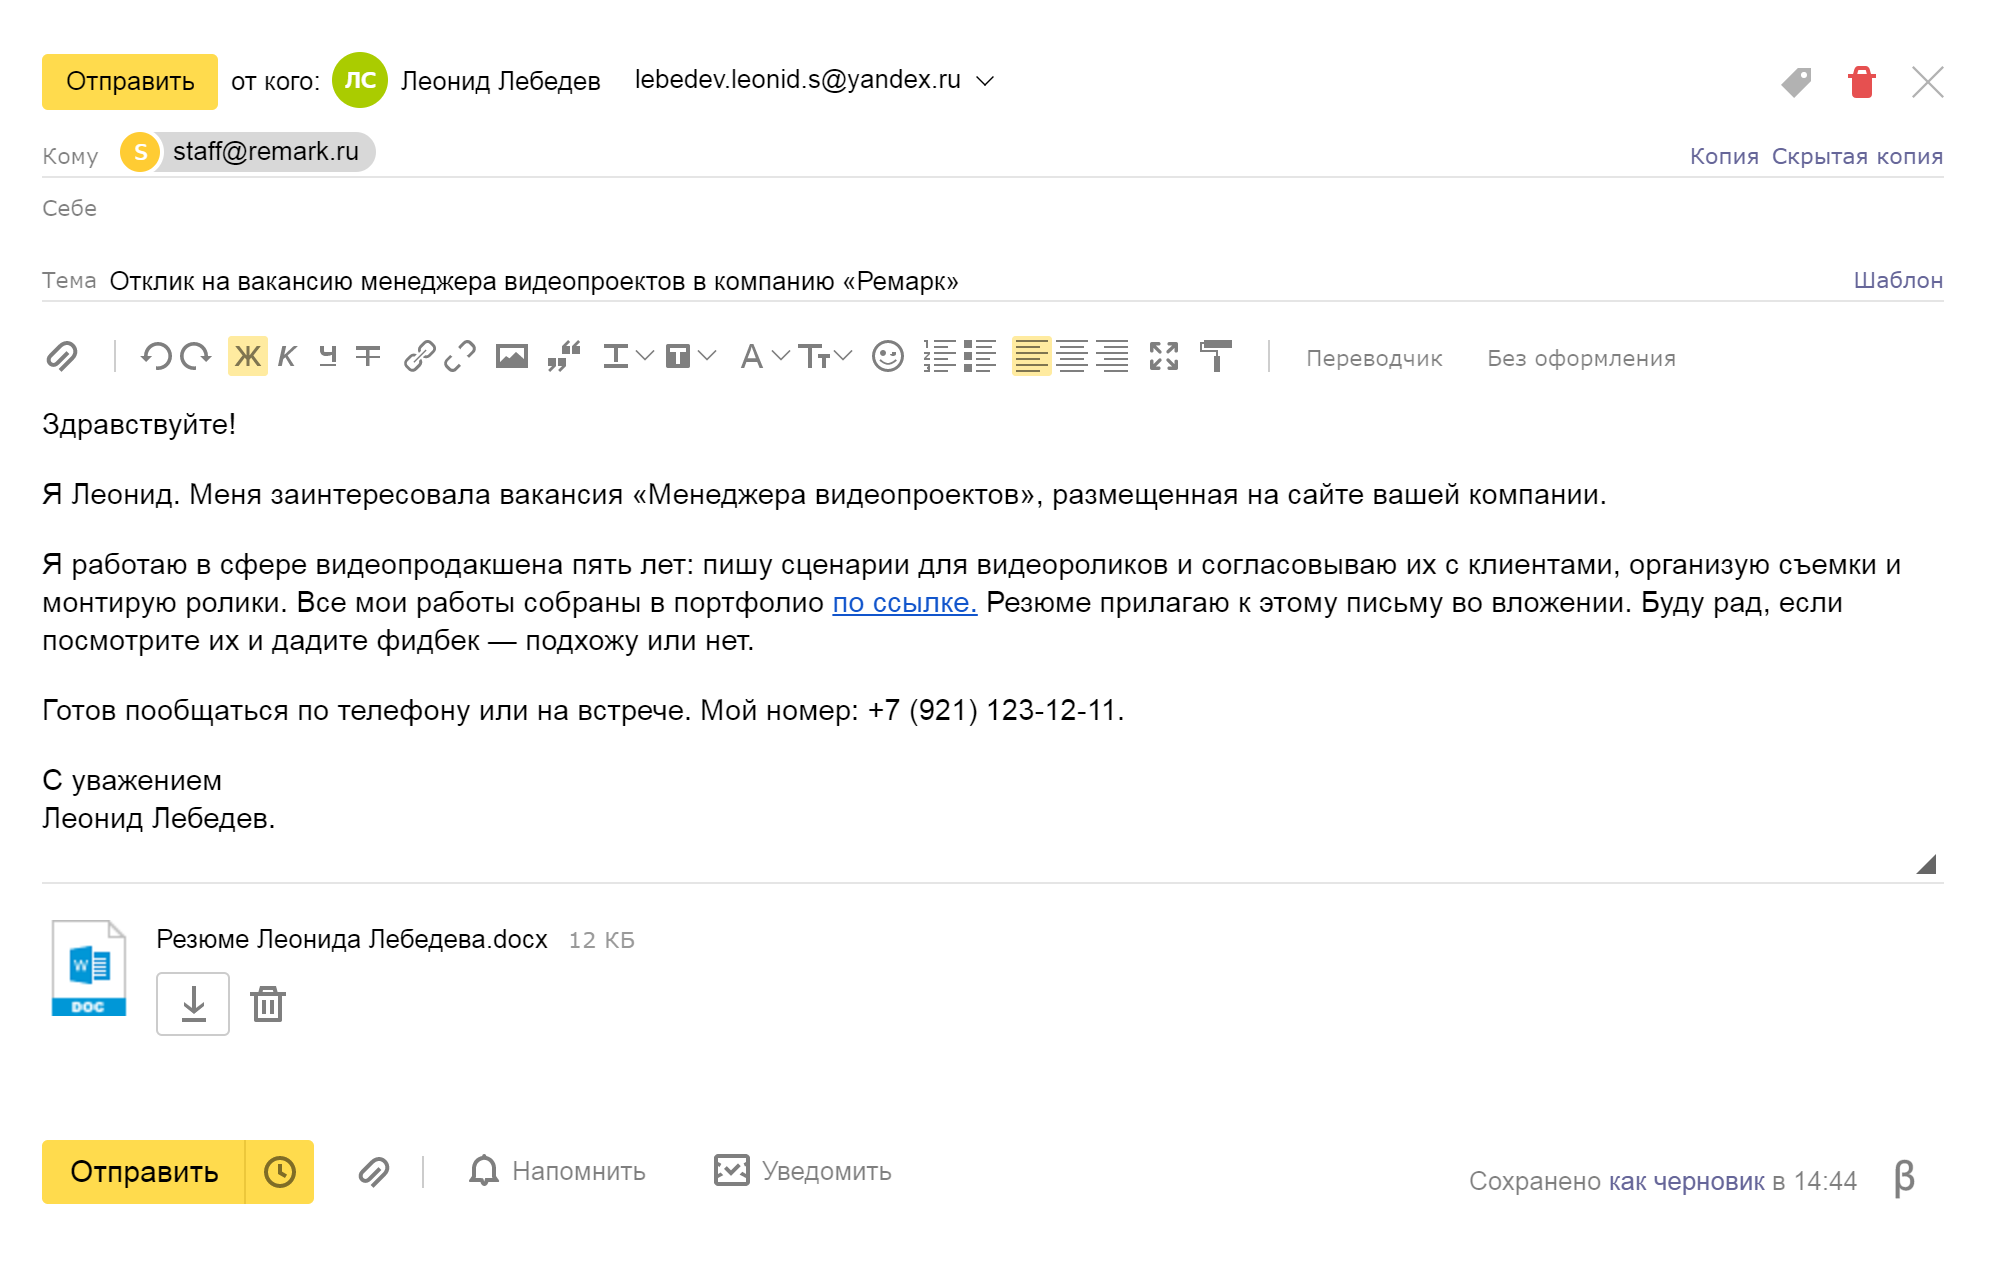 Обратите внимание на адрес электронной почты, с которого отправляете письмо потенциальному работодателю. Адрес должен содержать ваши фамилию, имя и быть в целом читабельным. Нежелательно отправлять письмо с адресов типа luchshiy⁠-⁠muzh⁠-⁠andrushka⁠-⁠2009@ya.ru или vefhvtmbrdgvneli2@mail.ru, потому что работодатель может не воспринять кандидата как делового человека